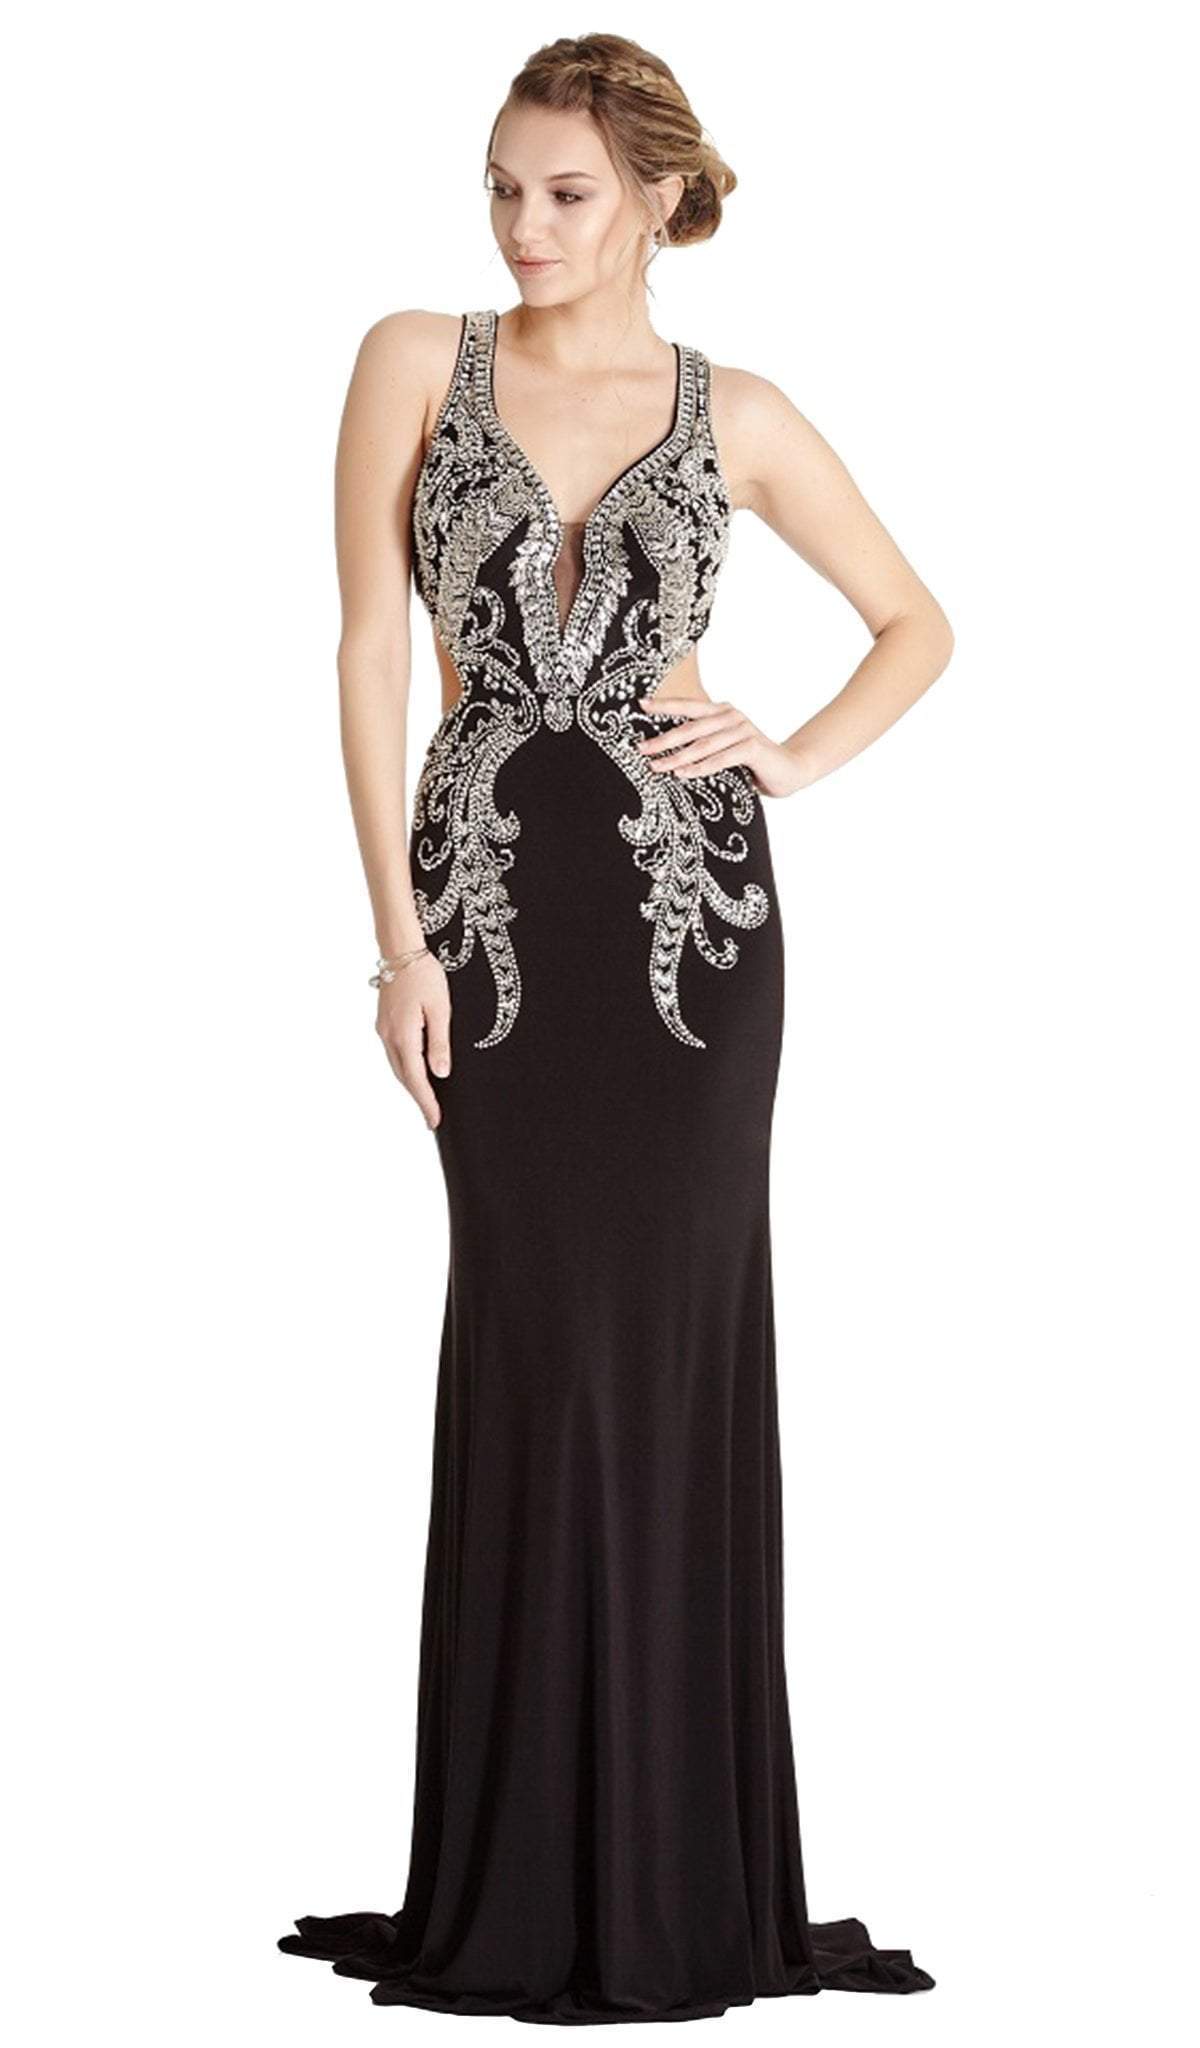 Aspeed Design - Embellished Deep V-neck Sheath Evening Dress
